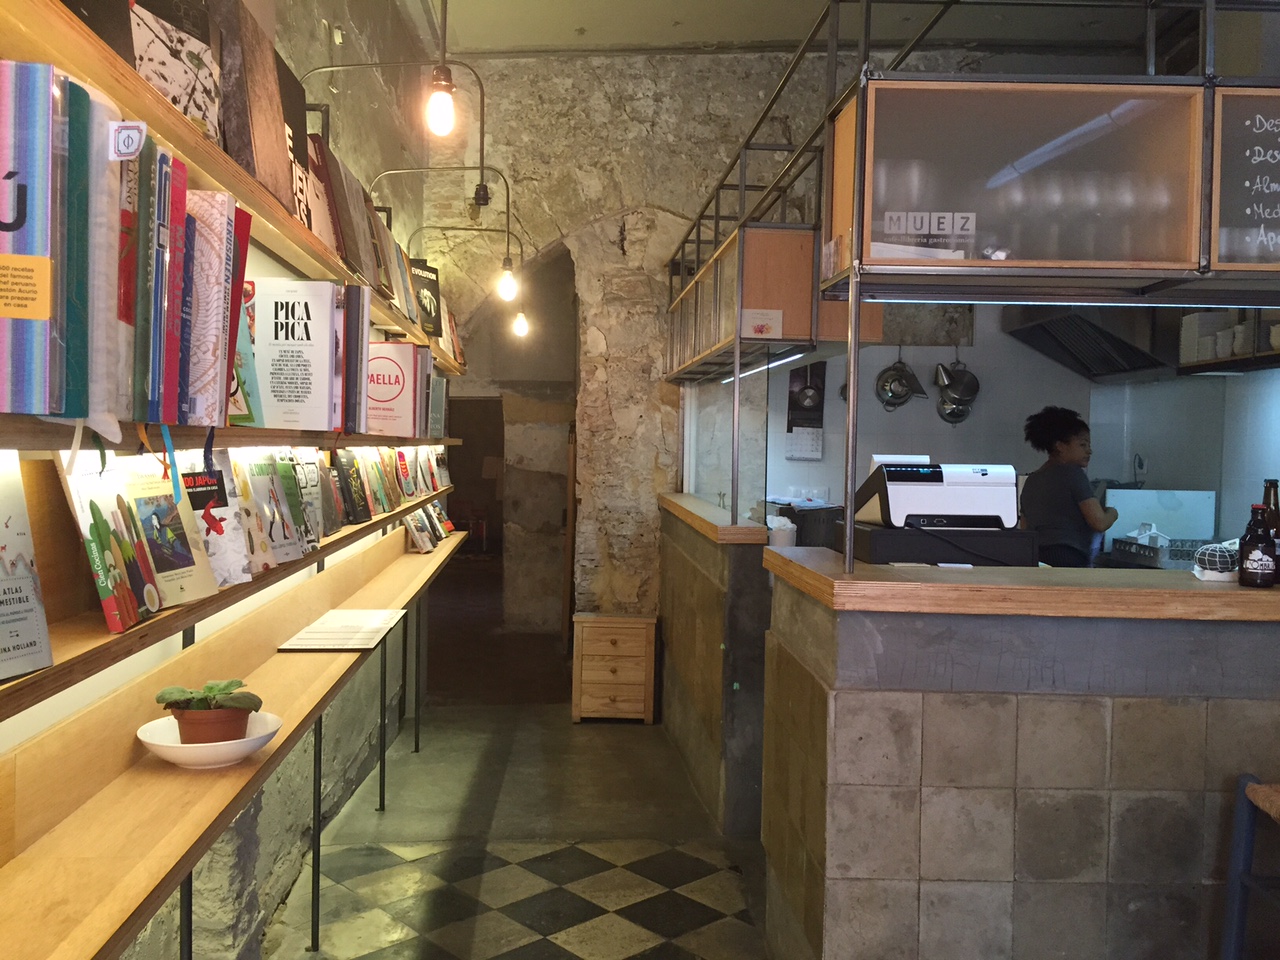 Muez es un café librería gastronómica ubicado muy cerca del Mercado Central de Valencia